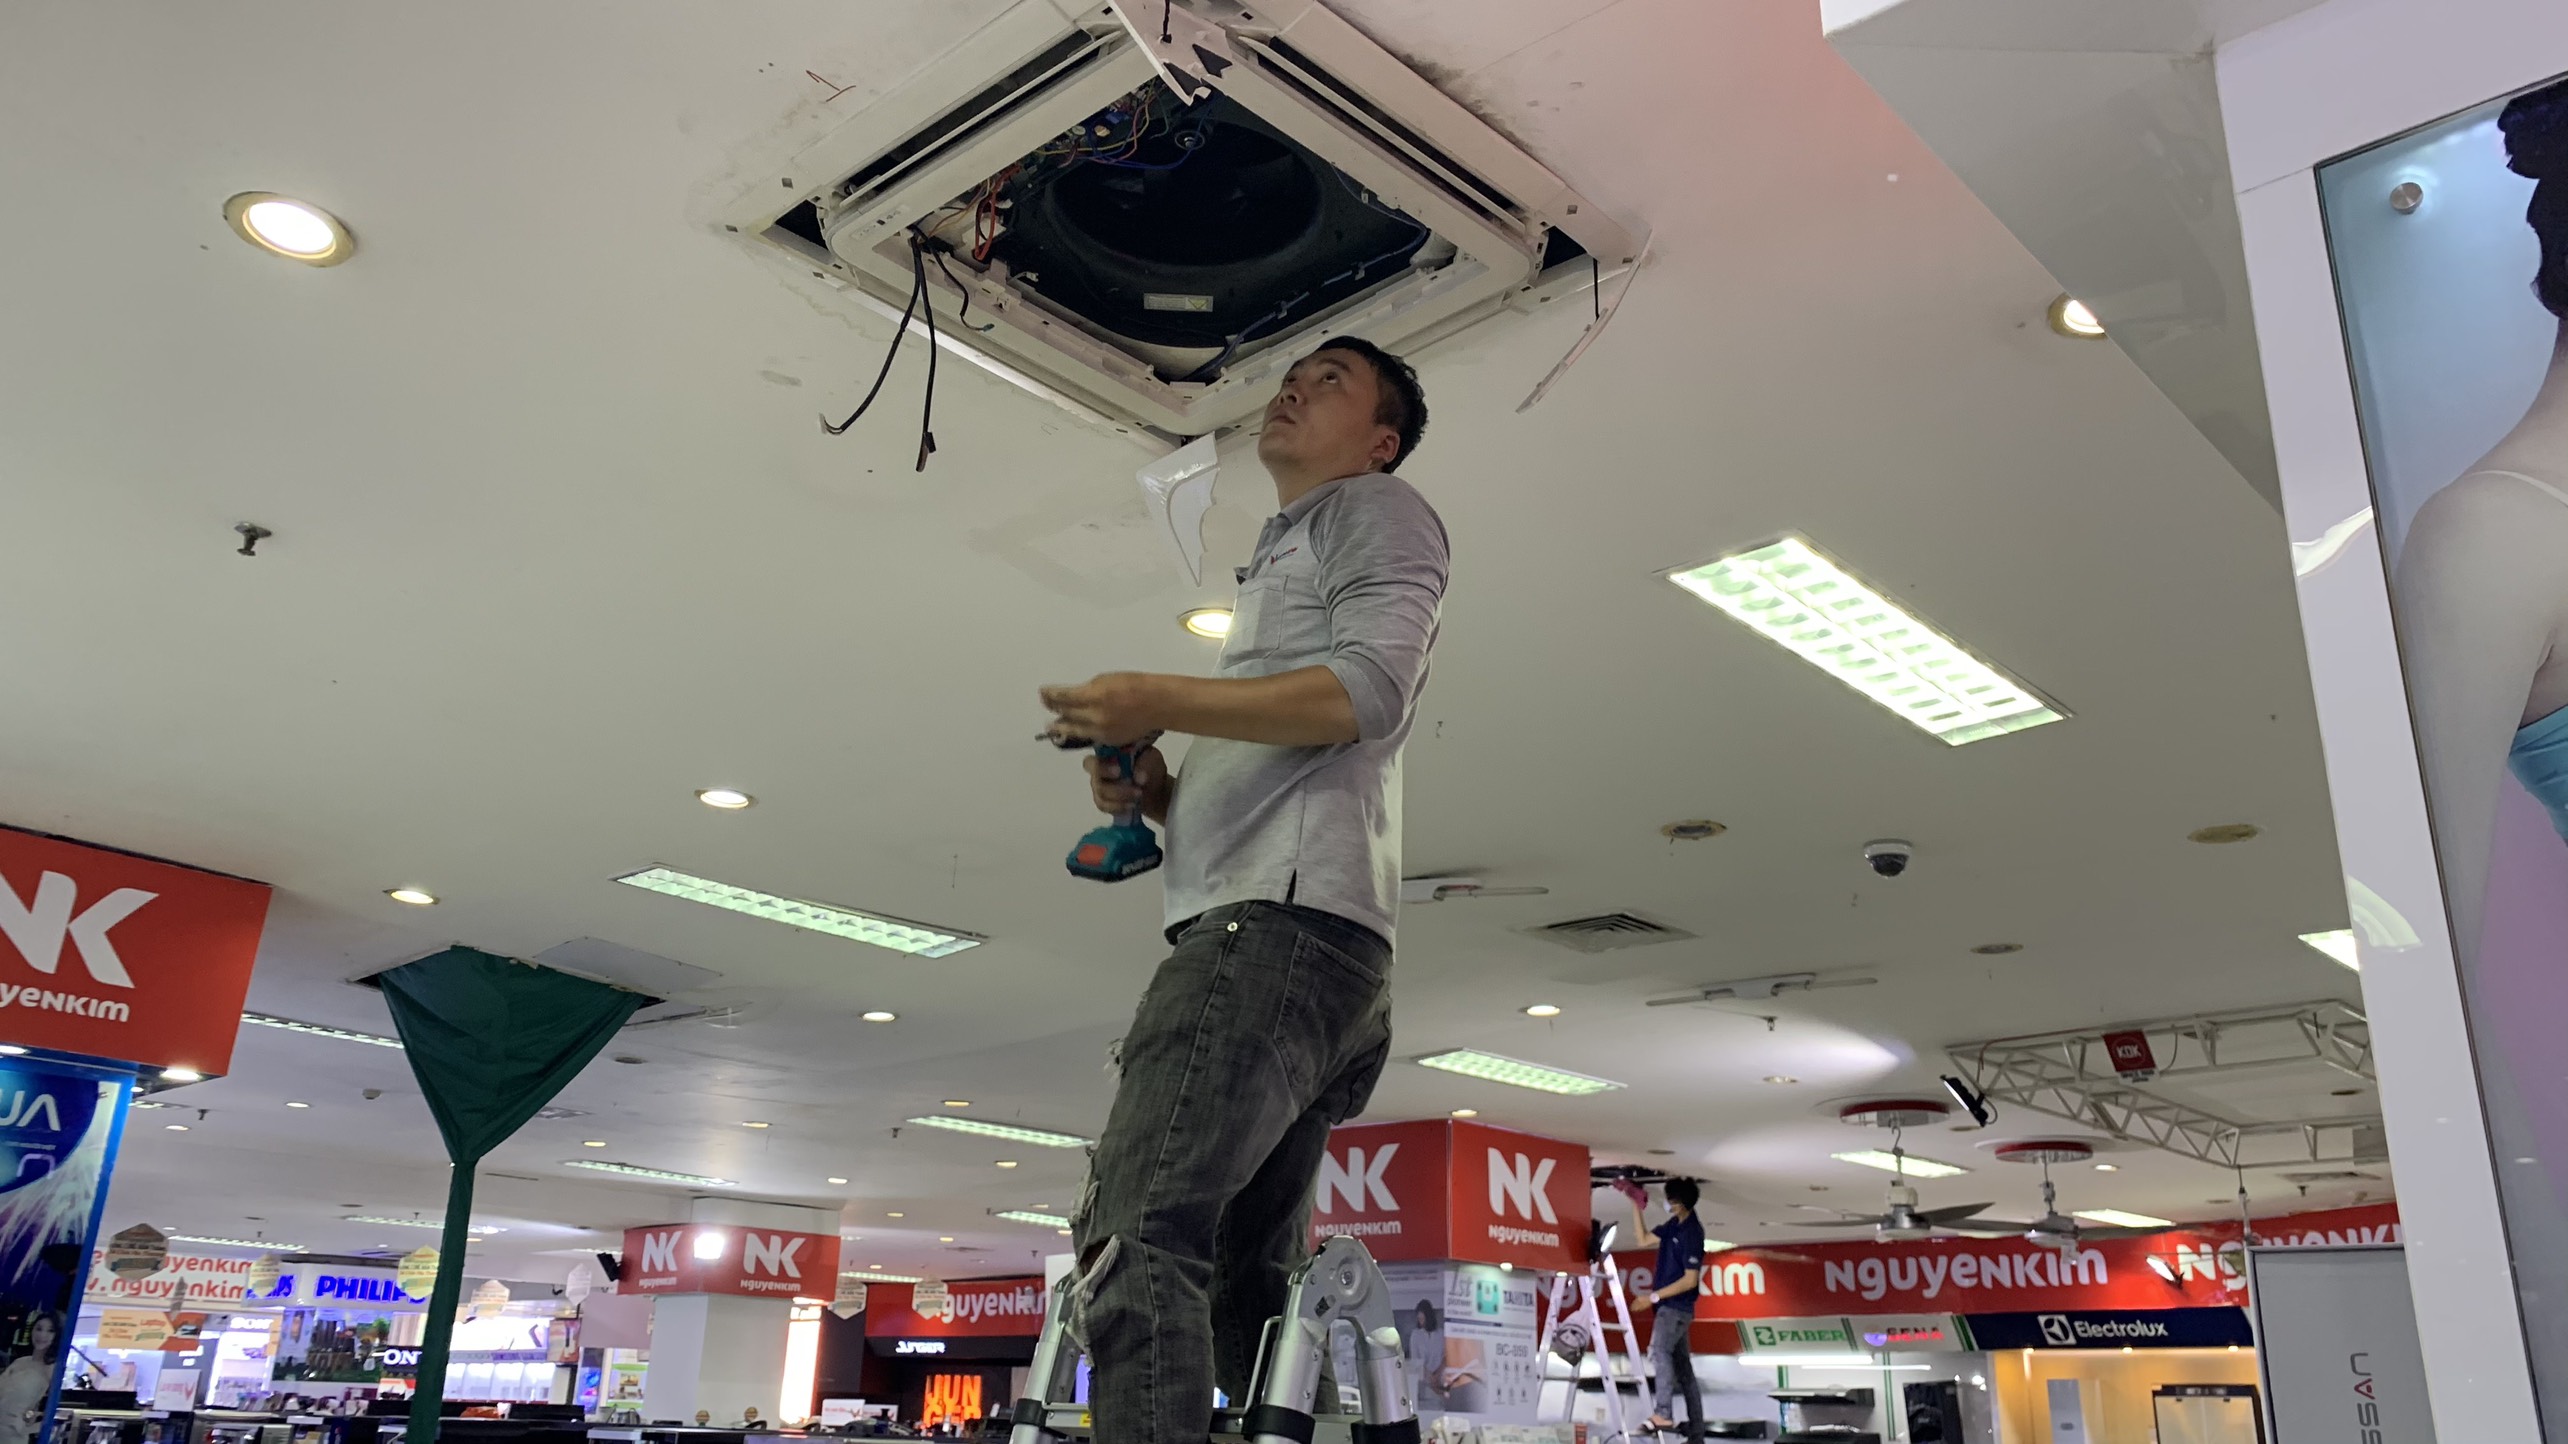 Vệ sinh máy lạnh âm trần cho siêu thị điện máy Nguyễn Kim, Tân Bình